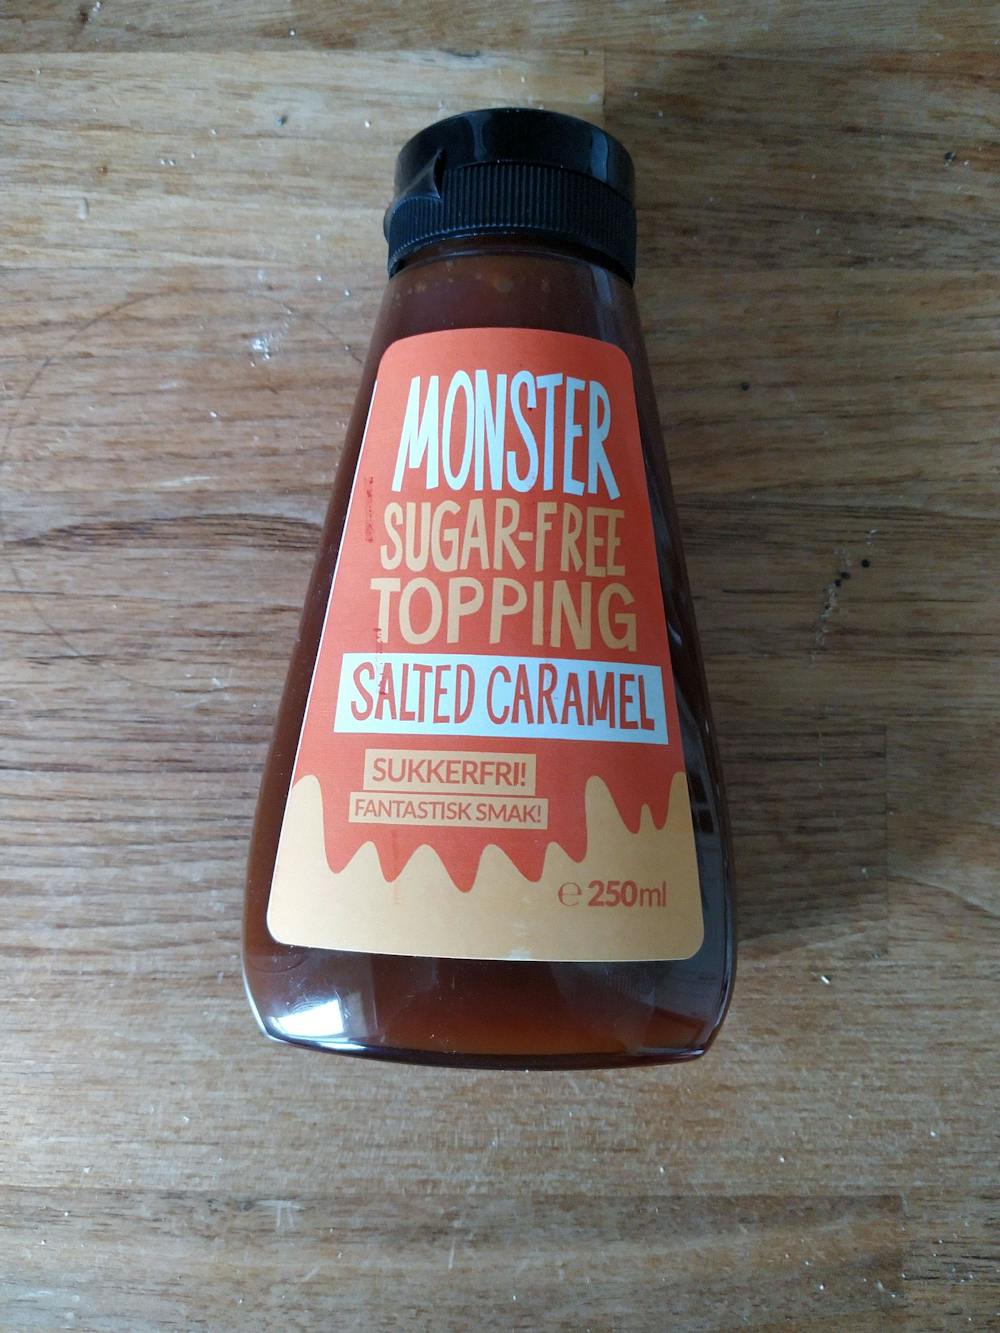 Monster sugar-free topping, salted caramel, Monster snacks